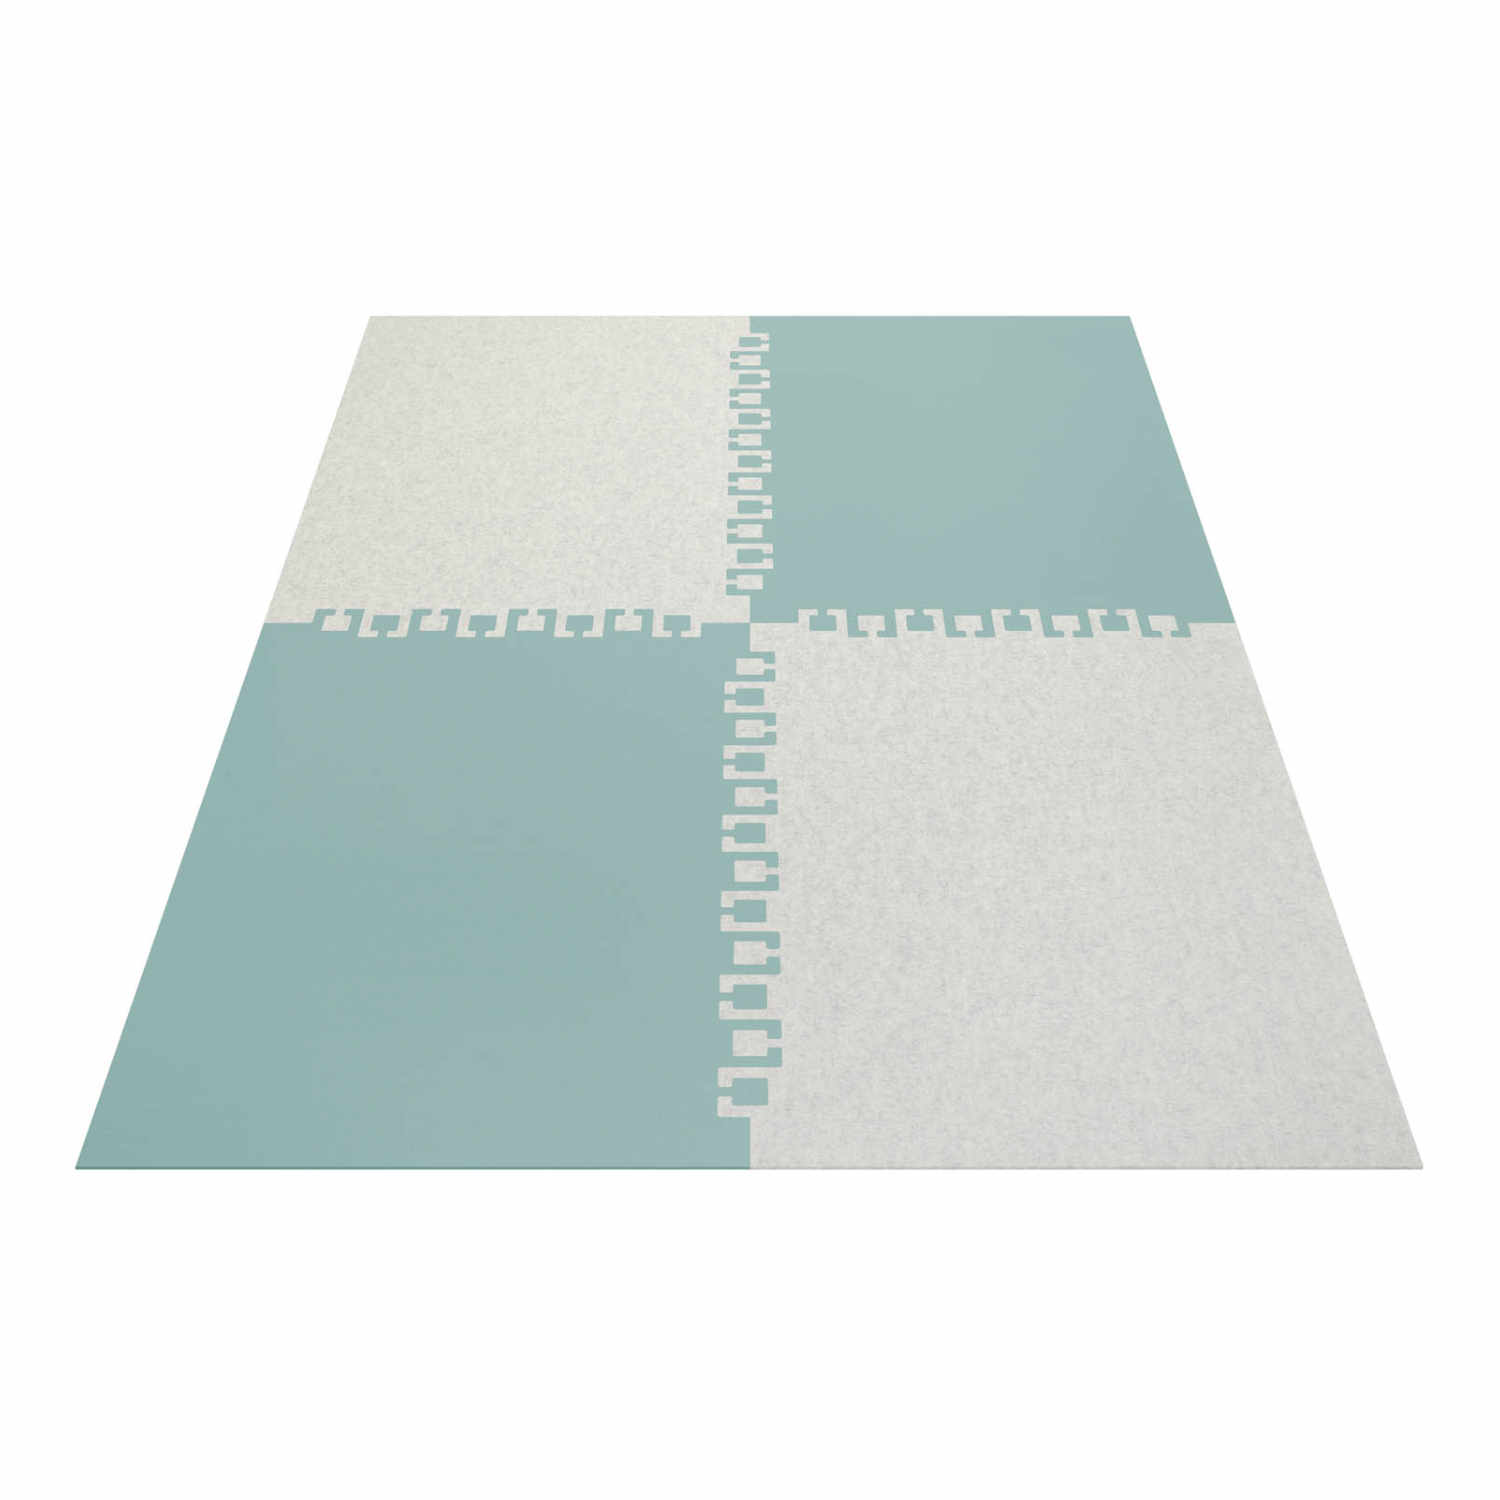 Twice rechteckig 4-teilig Teppich, Farbe wollweiss, Farbe 2 graphit 08, Grösse 140 x 200 cm von HEY-SIGN